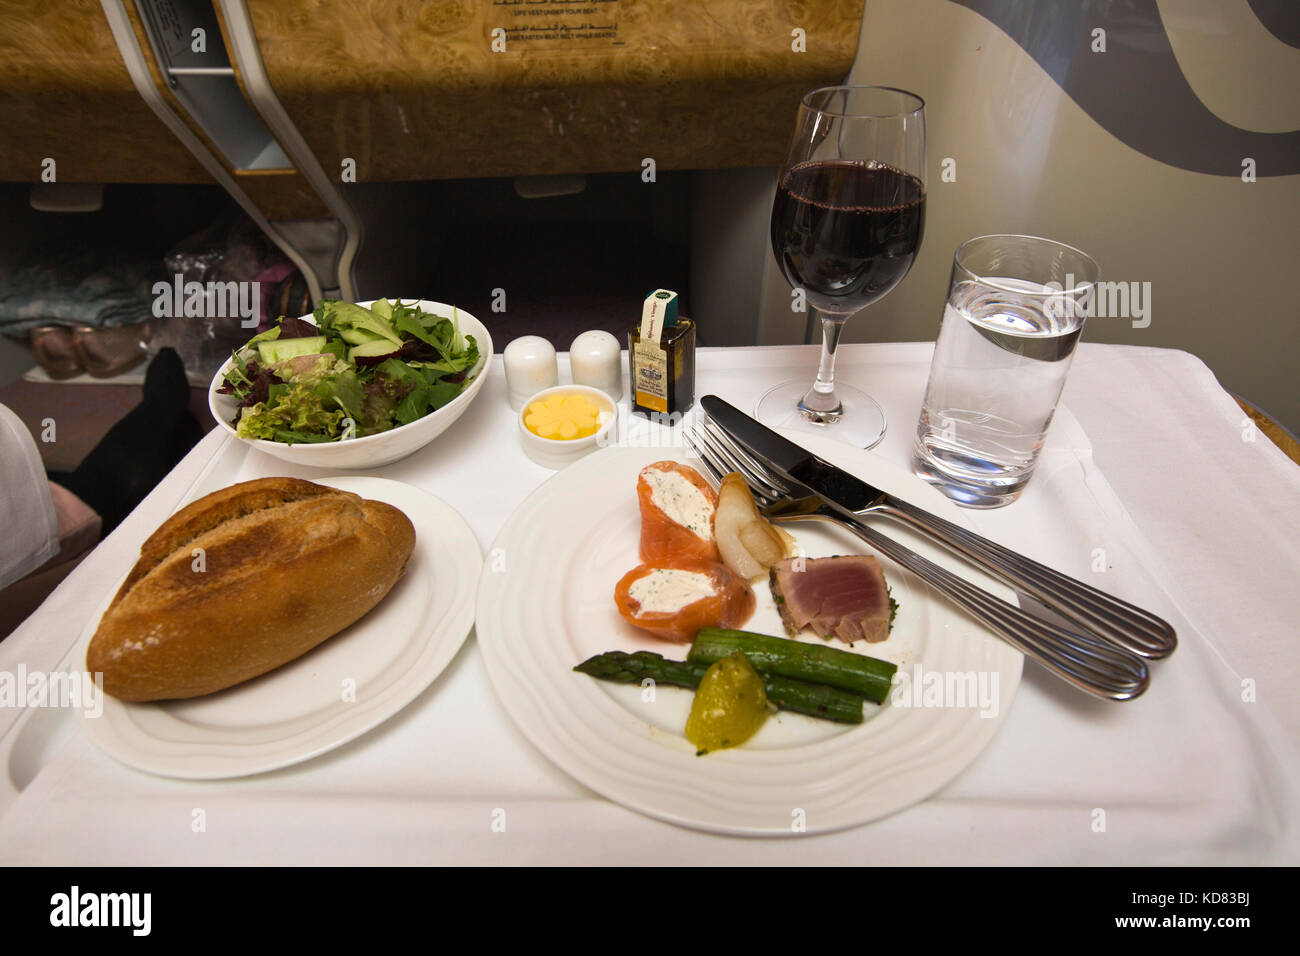 Voyage aérien en Classe Affaires Emirates Airlines, de l'alimentation du saumon fumé et du thon poêlé servi dans une cabine de l'A380 Banque D'Images